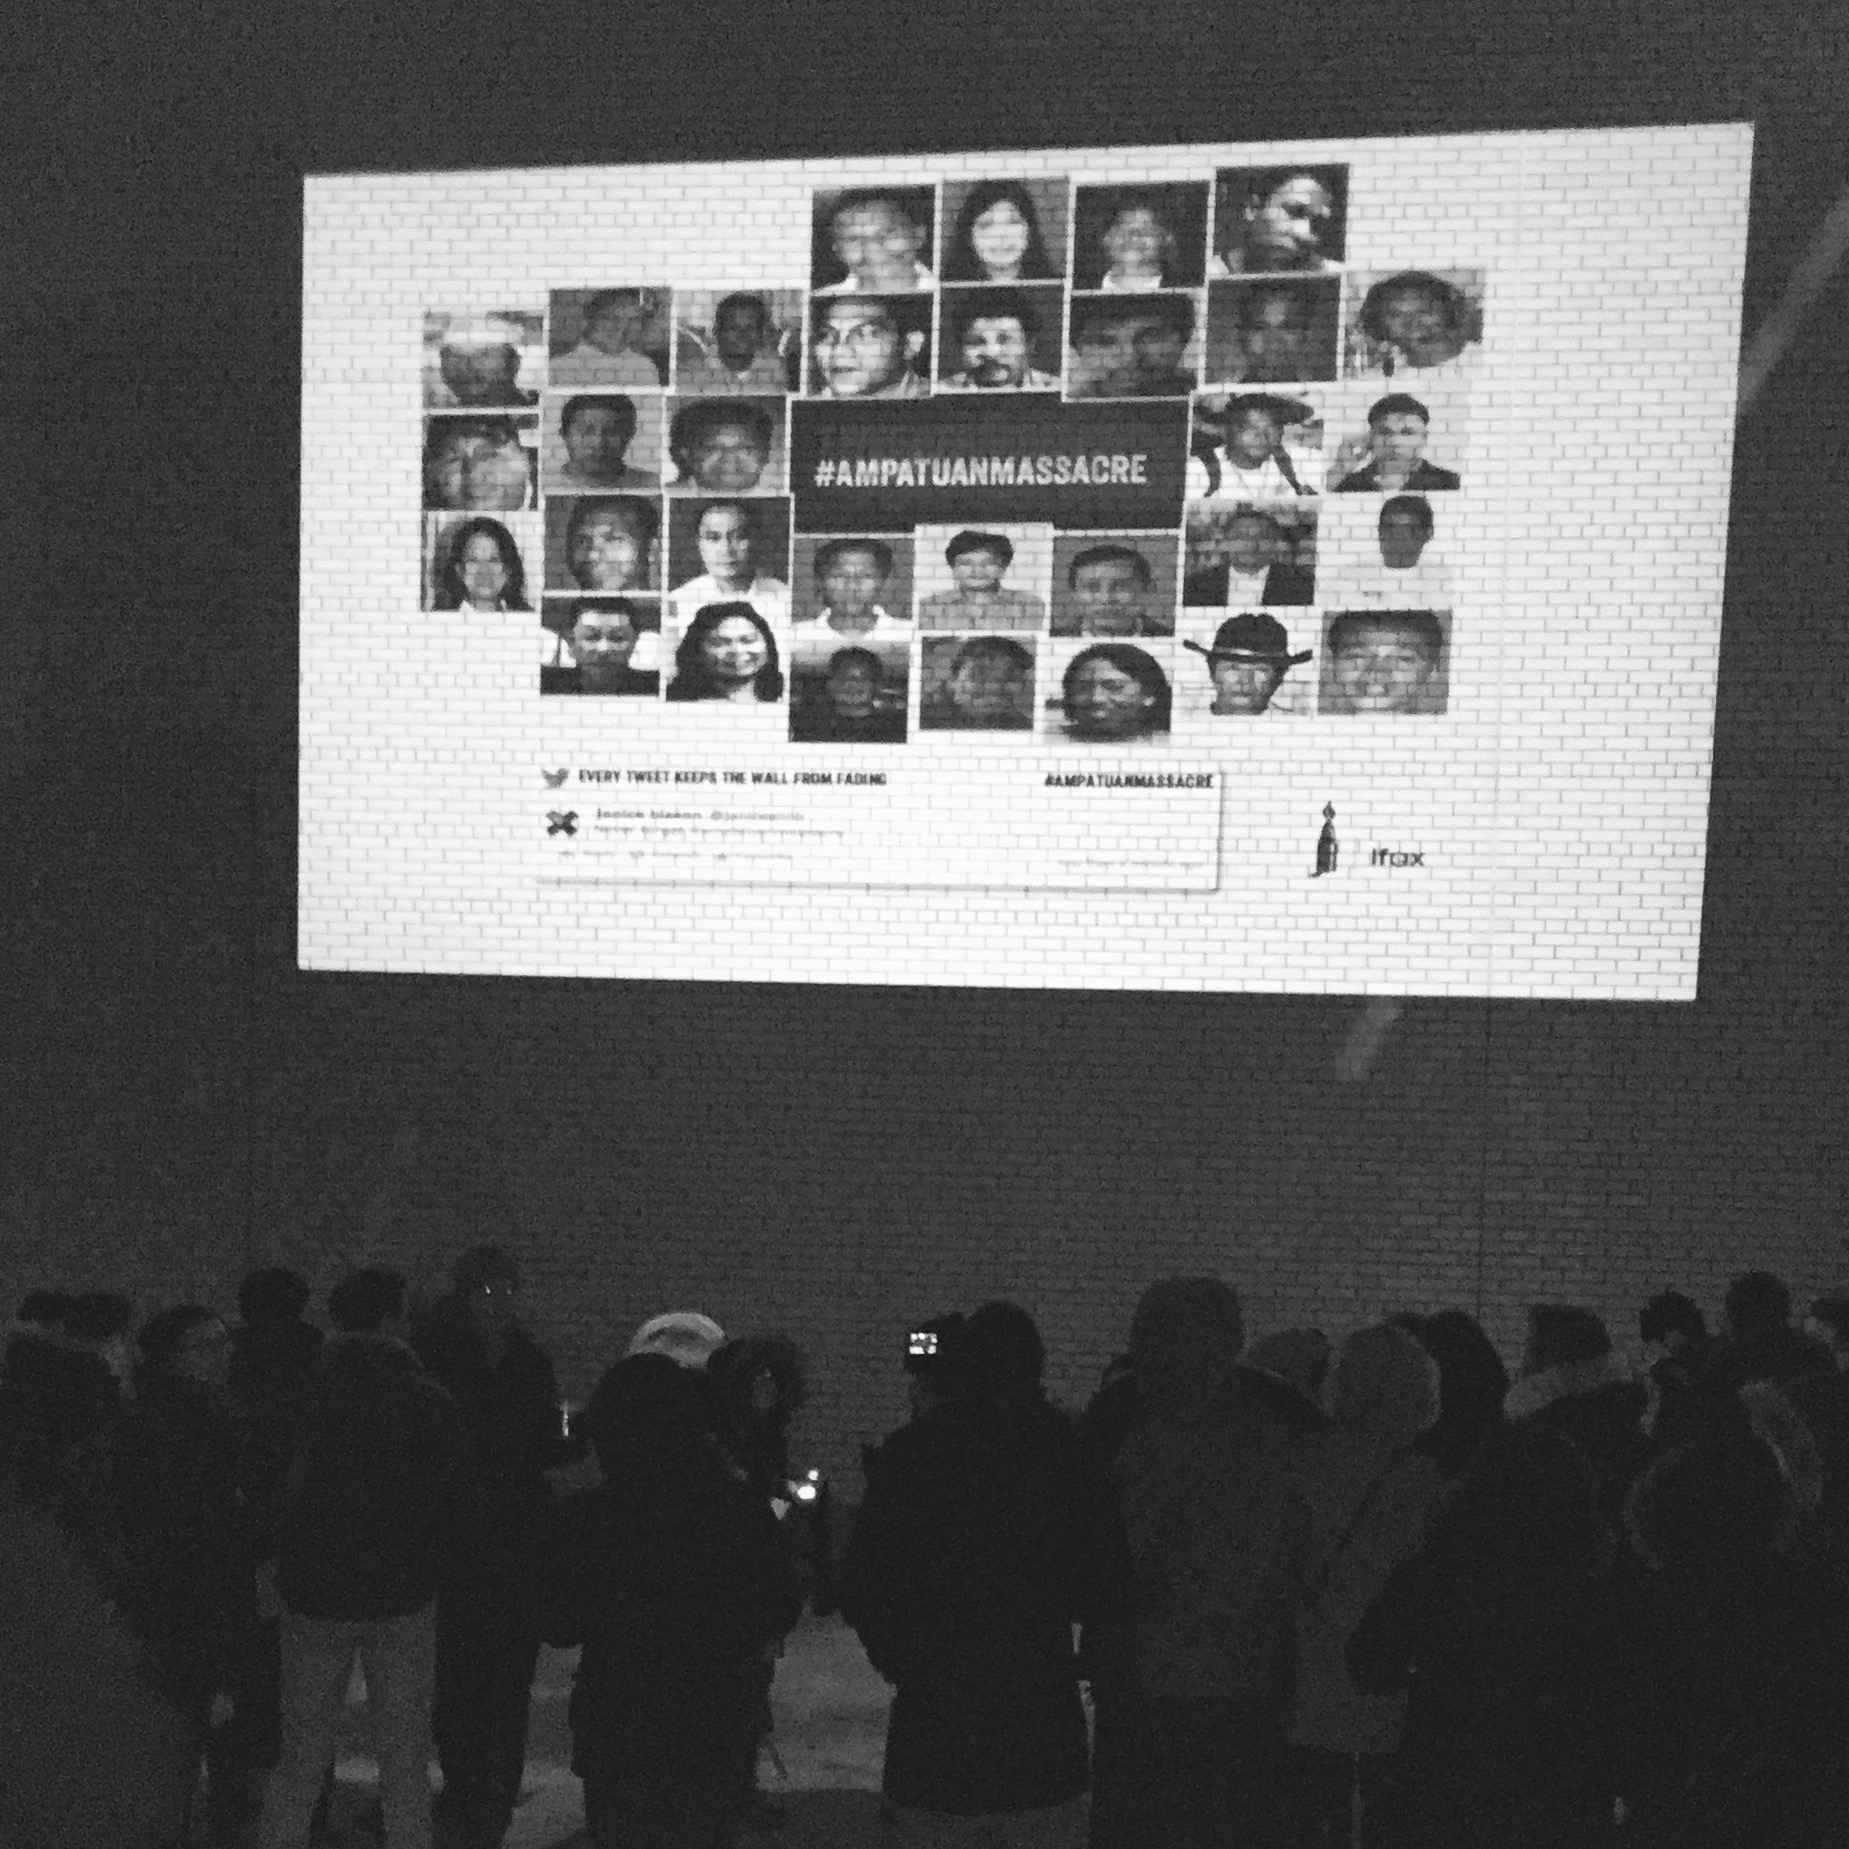  تجمع في تورنتو بتاريخ 2 كانون الأول للتغريد من أجل العدالة في قضية مذبحة امباتوان